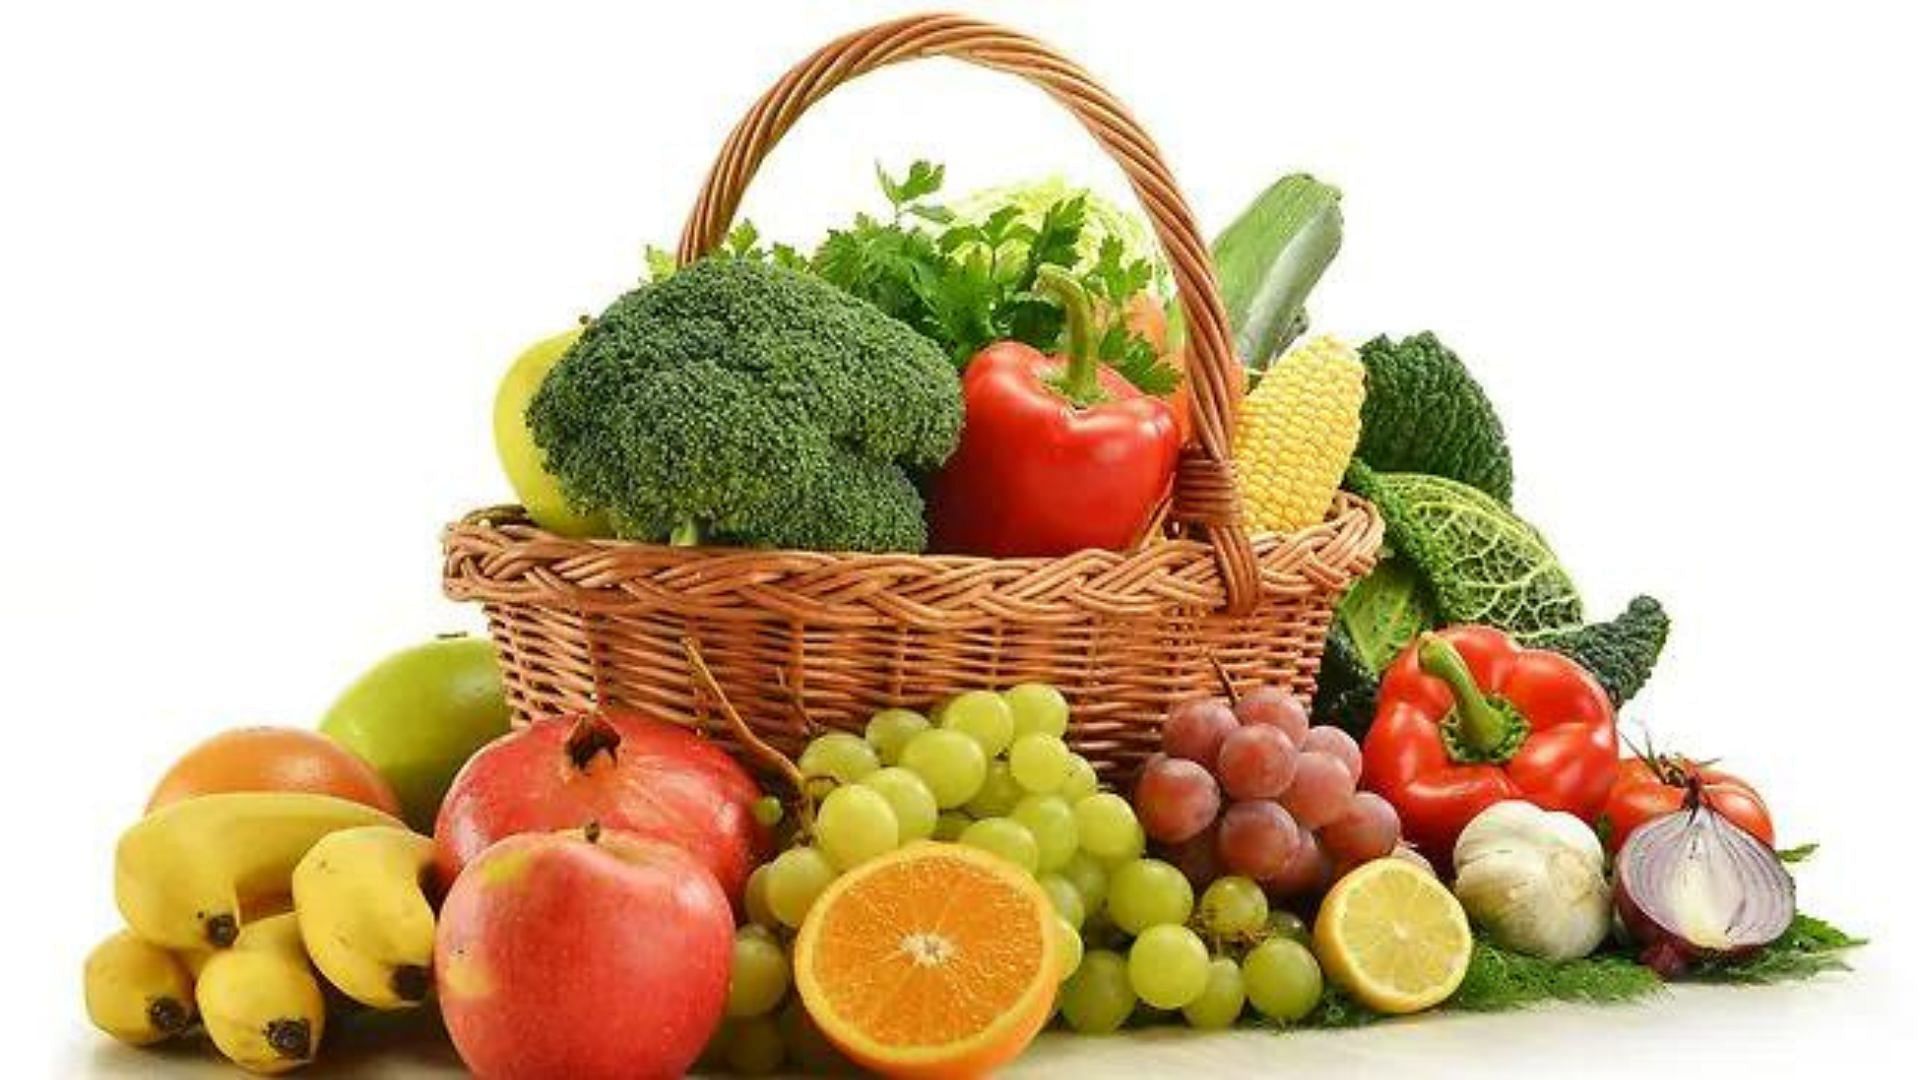 फल और सब्जियां!